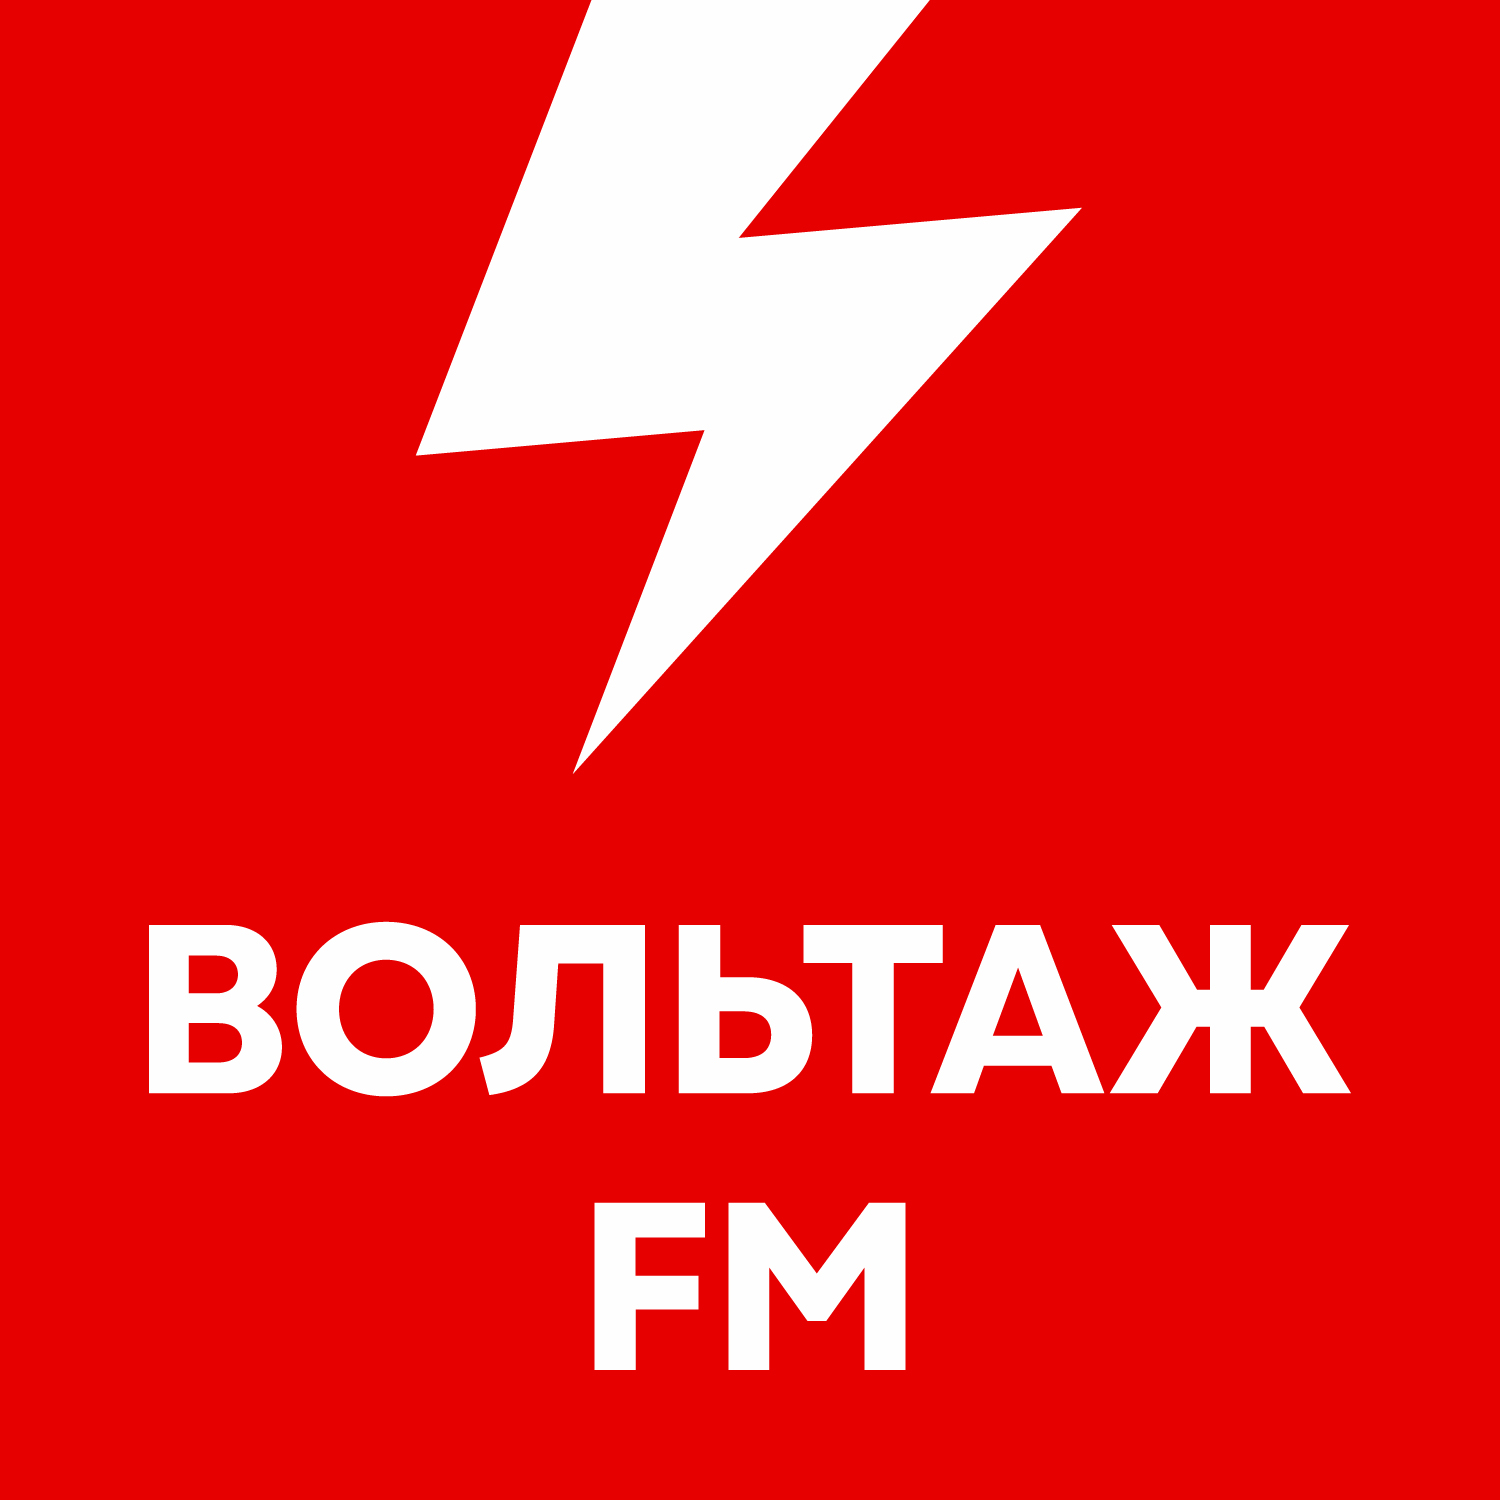 Вольтаж FM